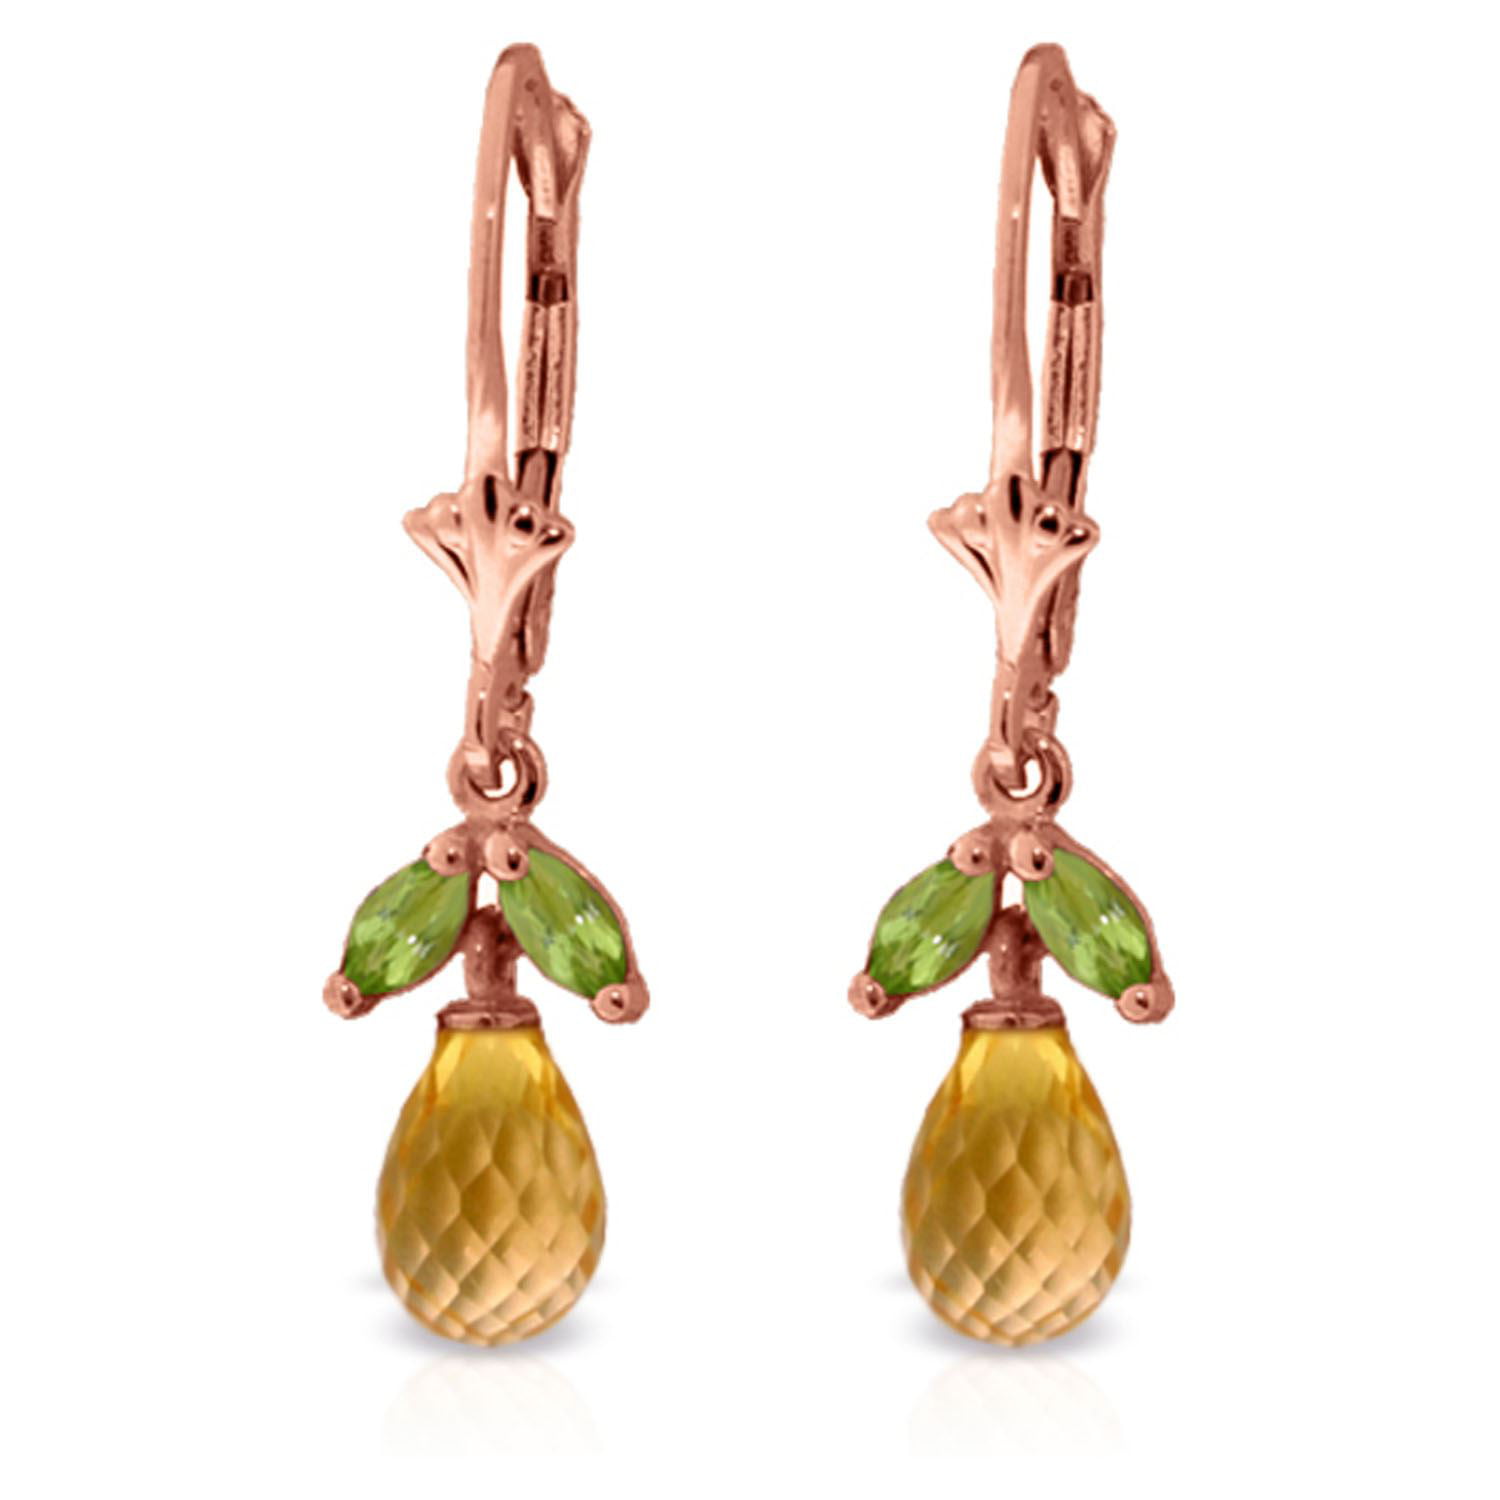 ALARRI 14K Solid Rose Gold Fish Hook Earrings w/ Peridots